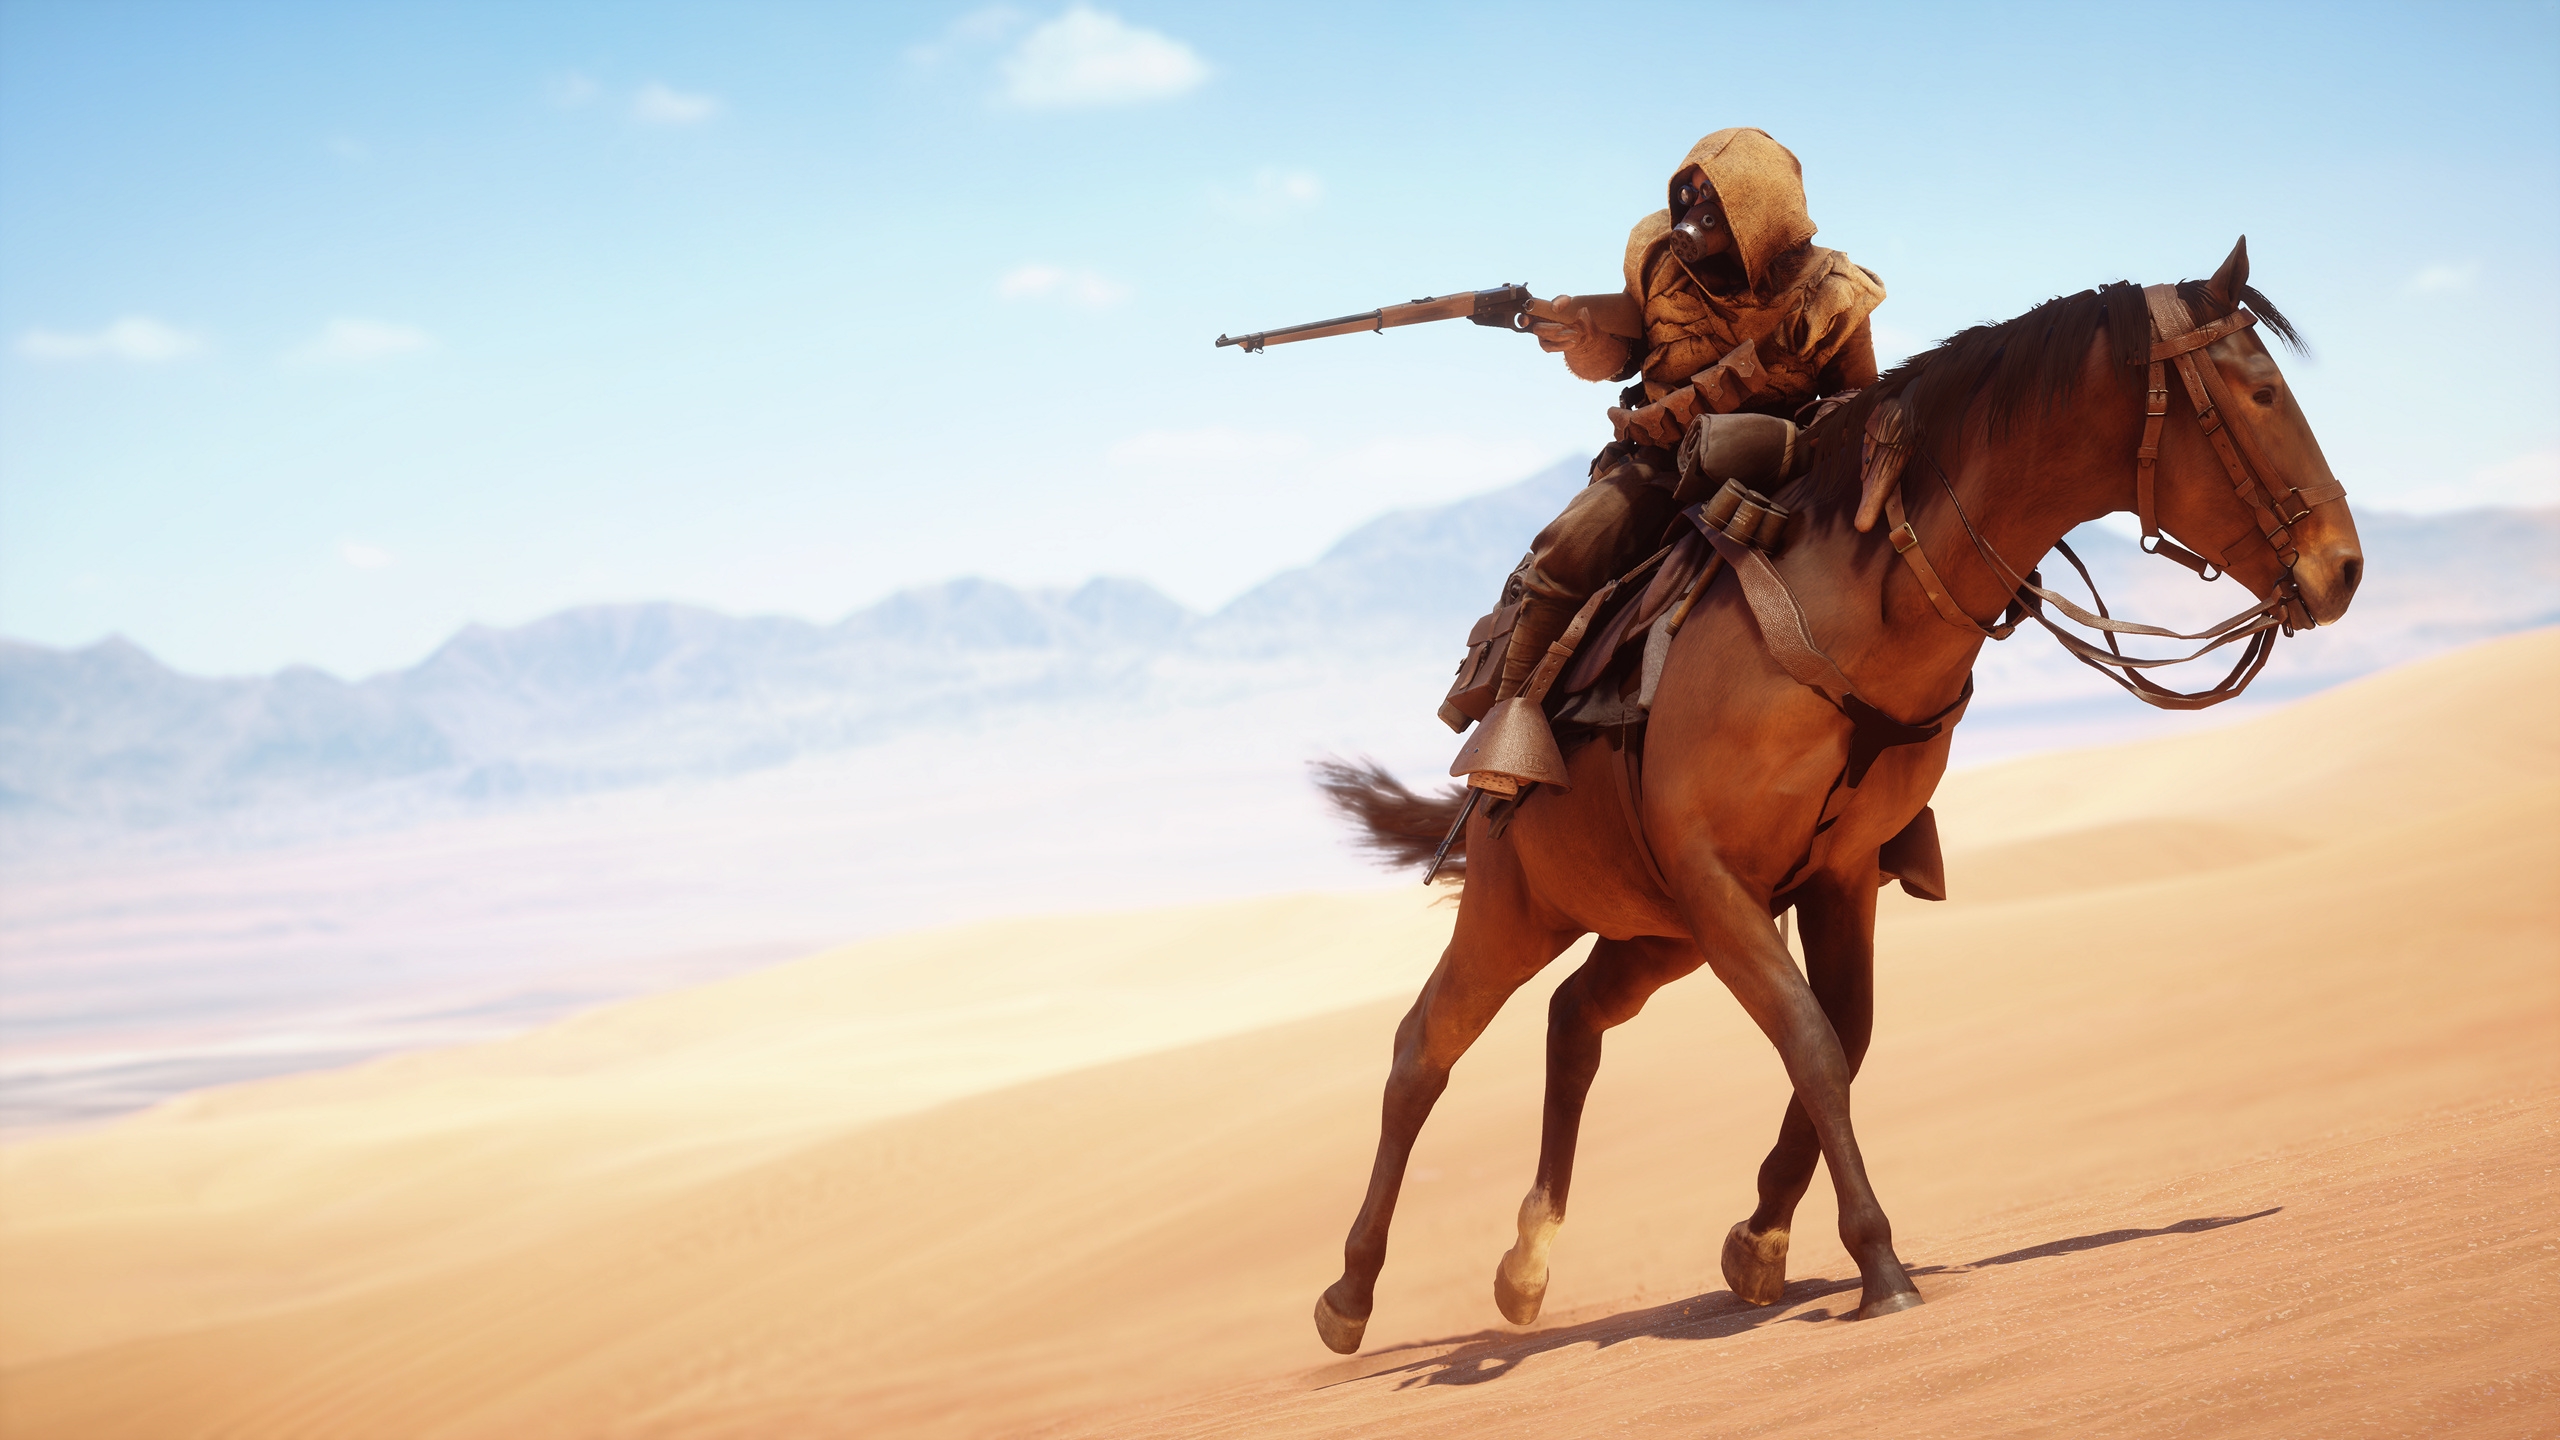 Battlefield 1, Soldier, Mask, Desert, Horse - Battlefield 1 , HD Wallpaper & Backgrounds